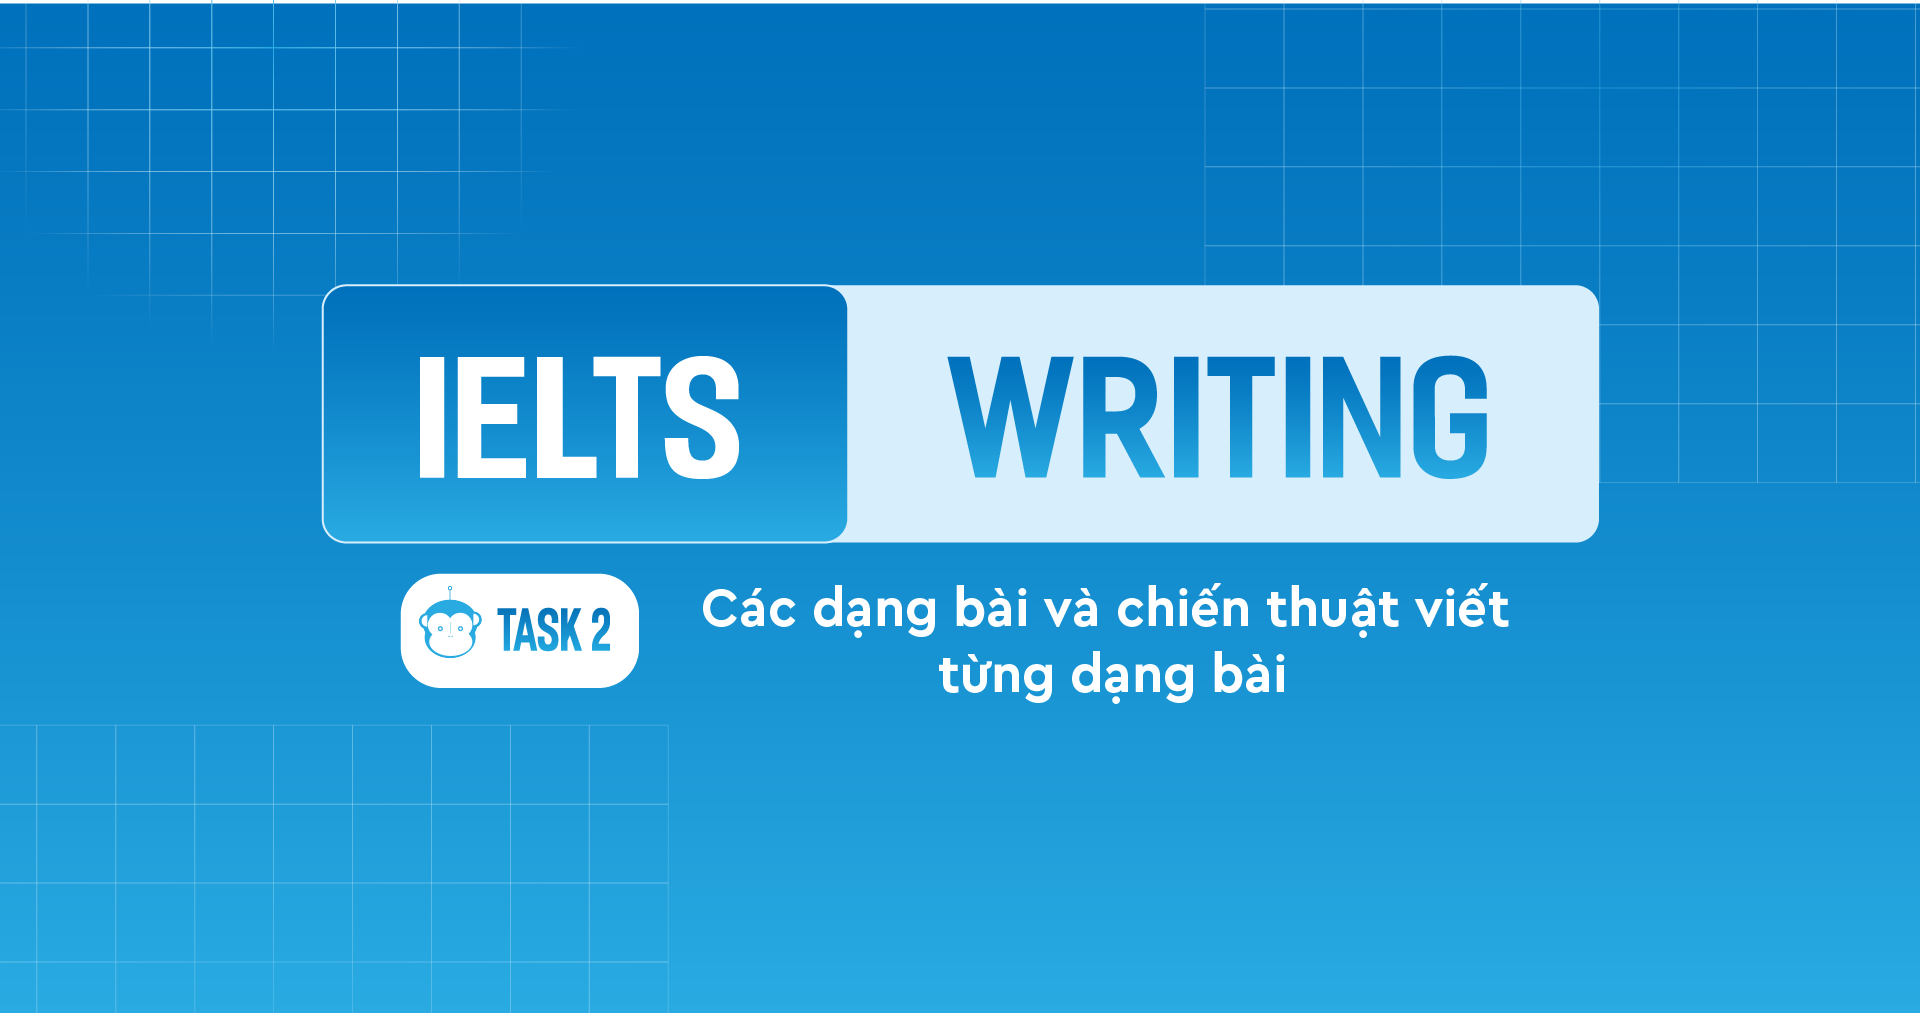 Các dạng bài và chiến thuật viết từng dạng bài trong IELTS Writing Task 2